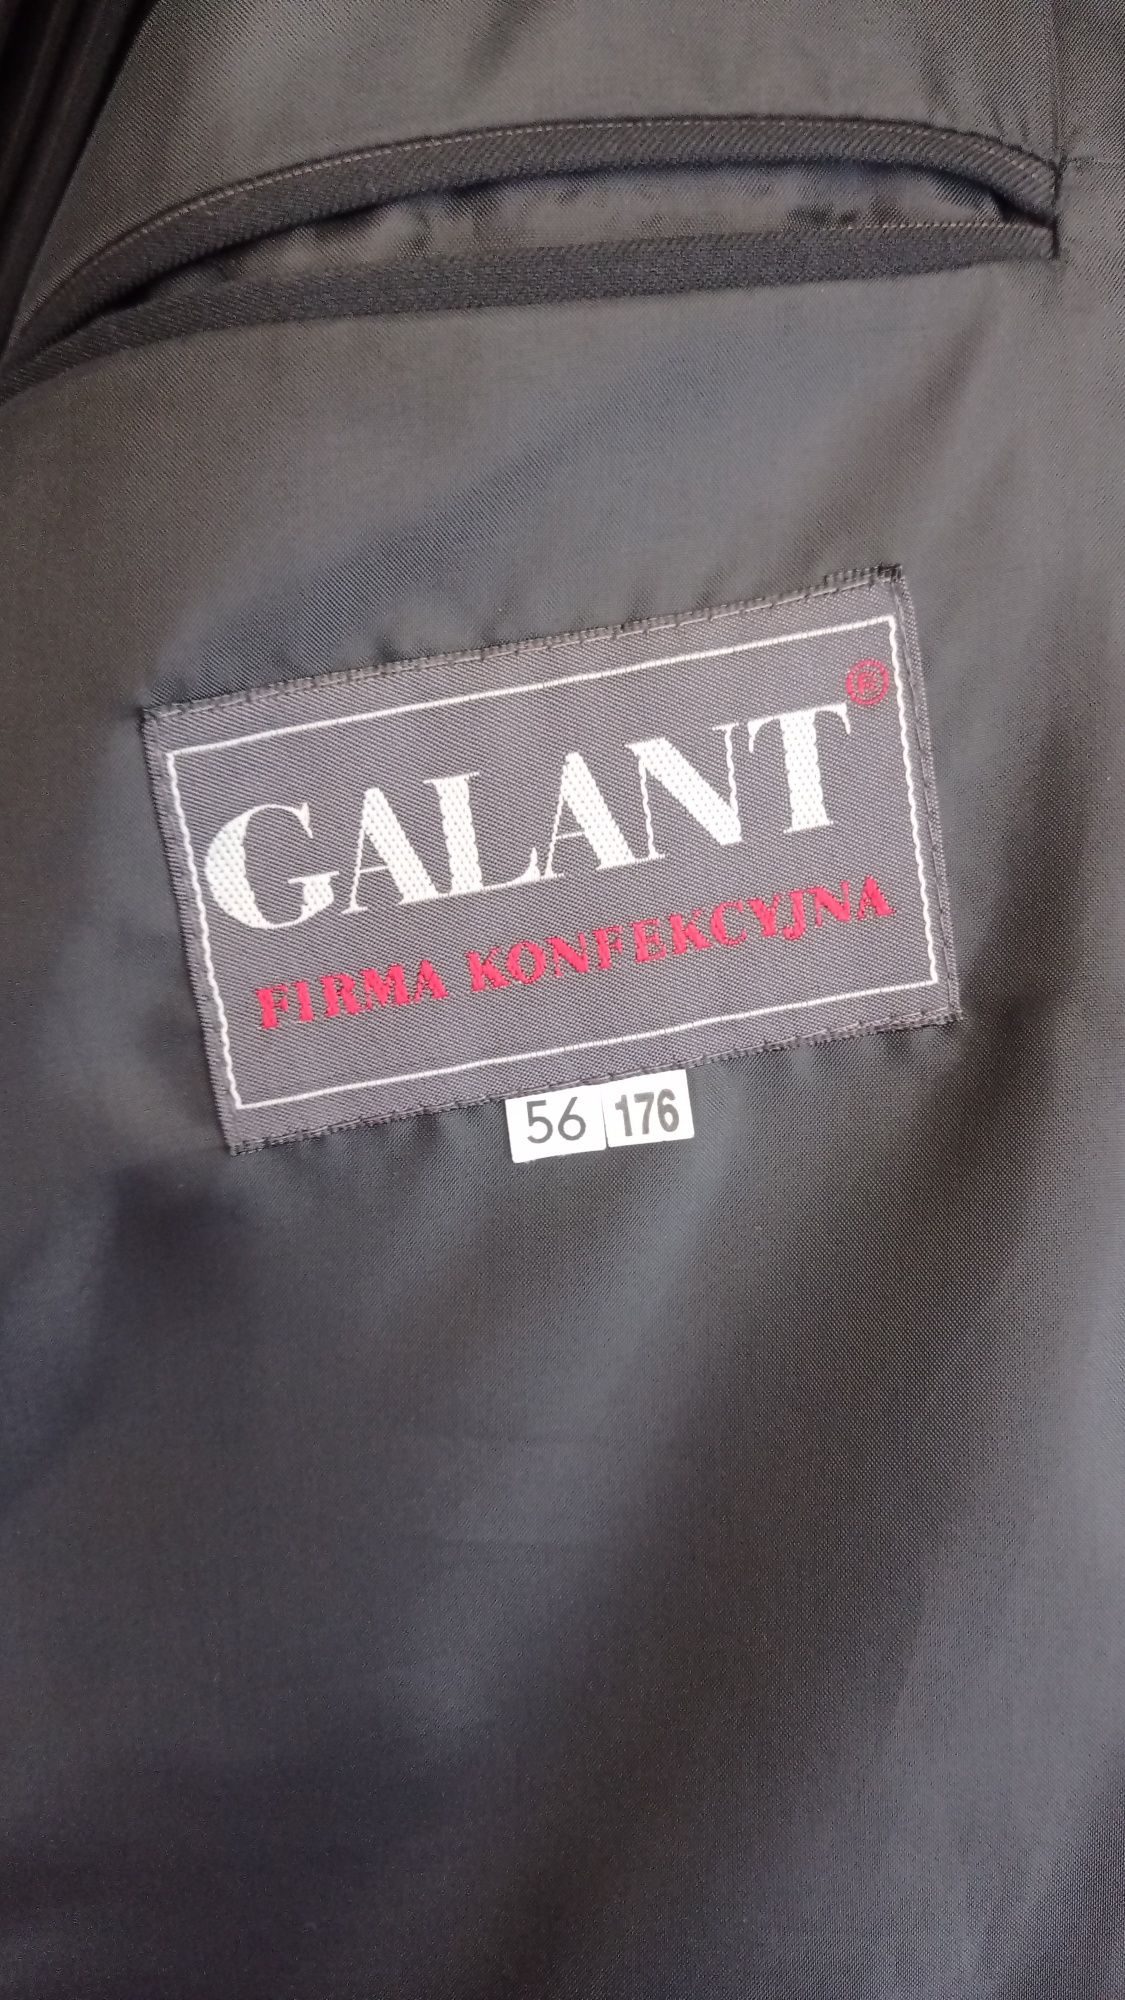 Garnitur męski 3 części czarny w brązową prążkę Galant 56/176